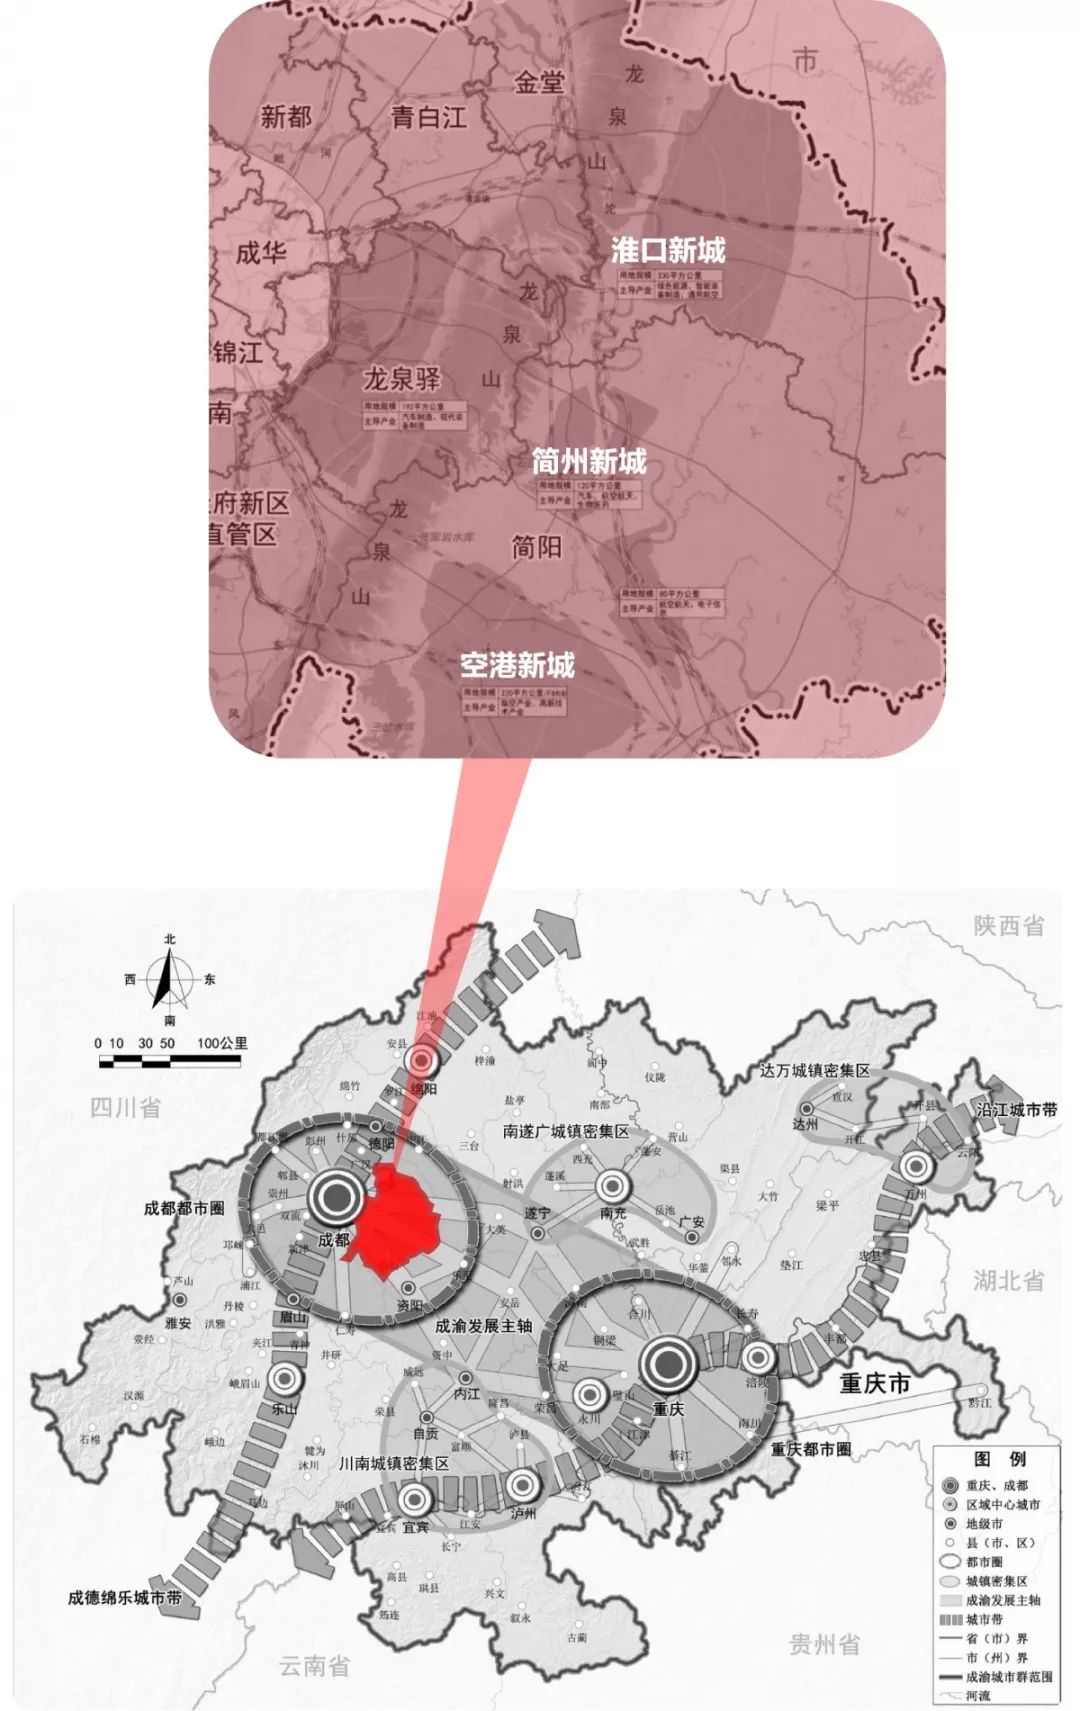 重庆则在渝西片区规划了科学城,去年出台的《重庆市城市提升行动计划